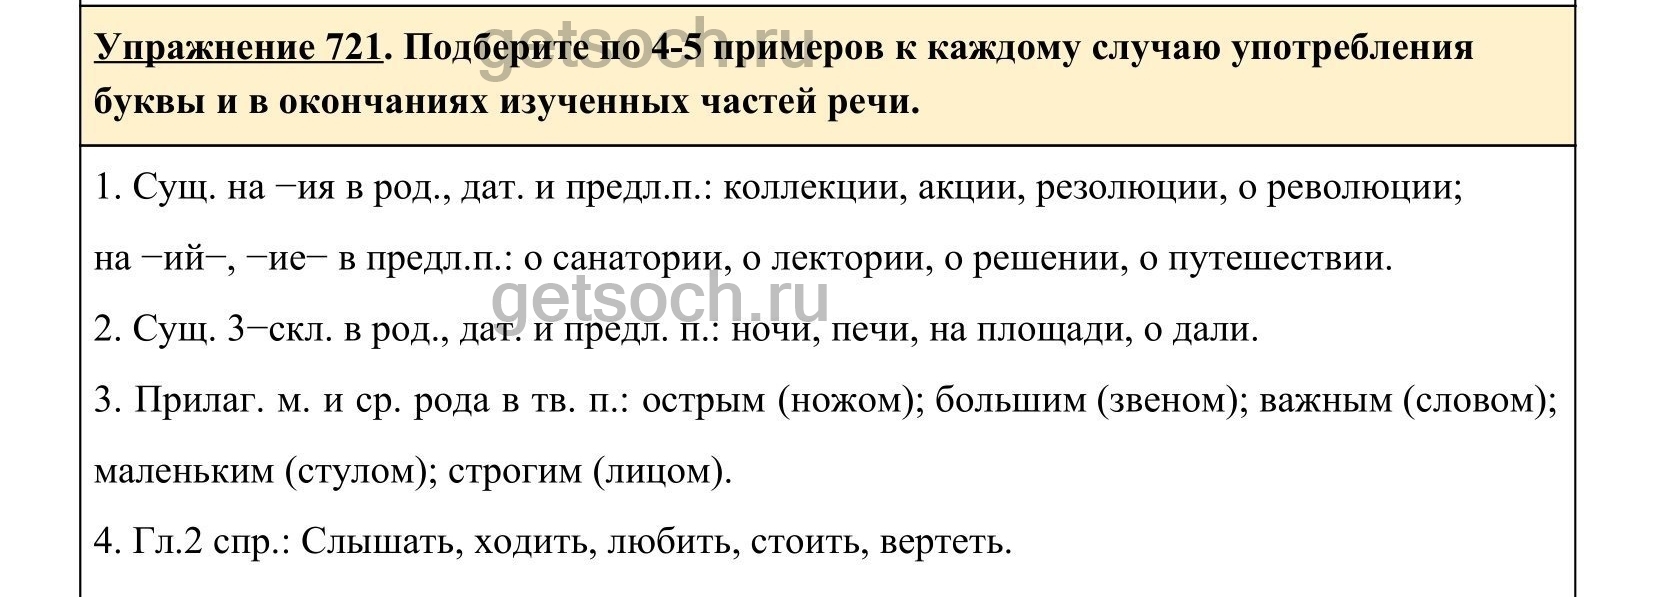 Русский язык 5 класс упражнение 767. Русский язык 721 упражнение. Упражнение 767 русский язык 5 класс.